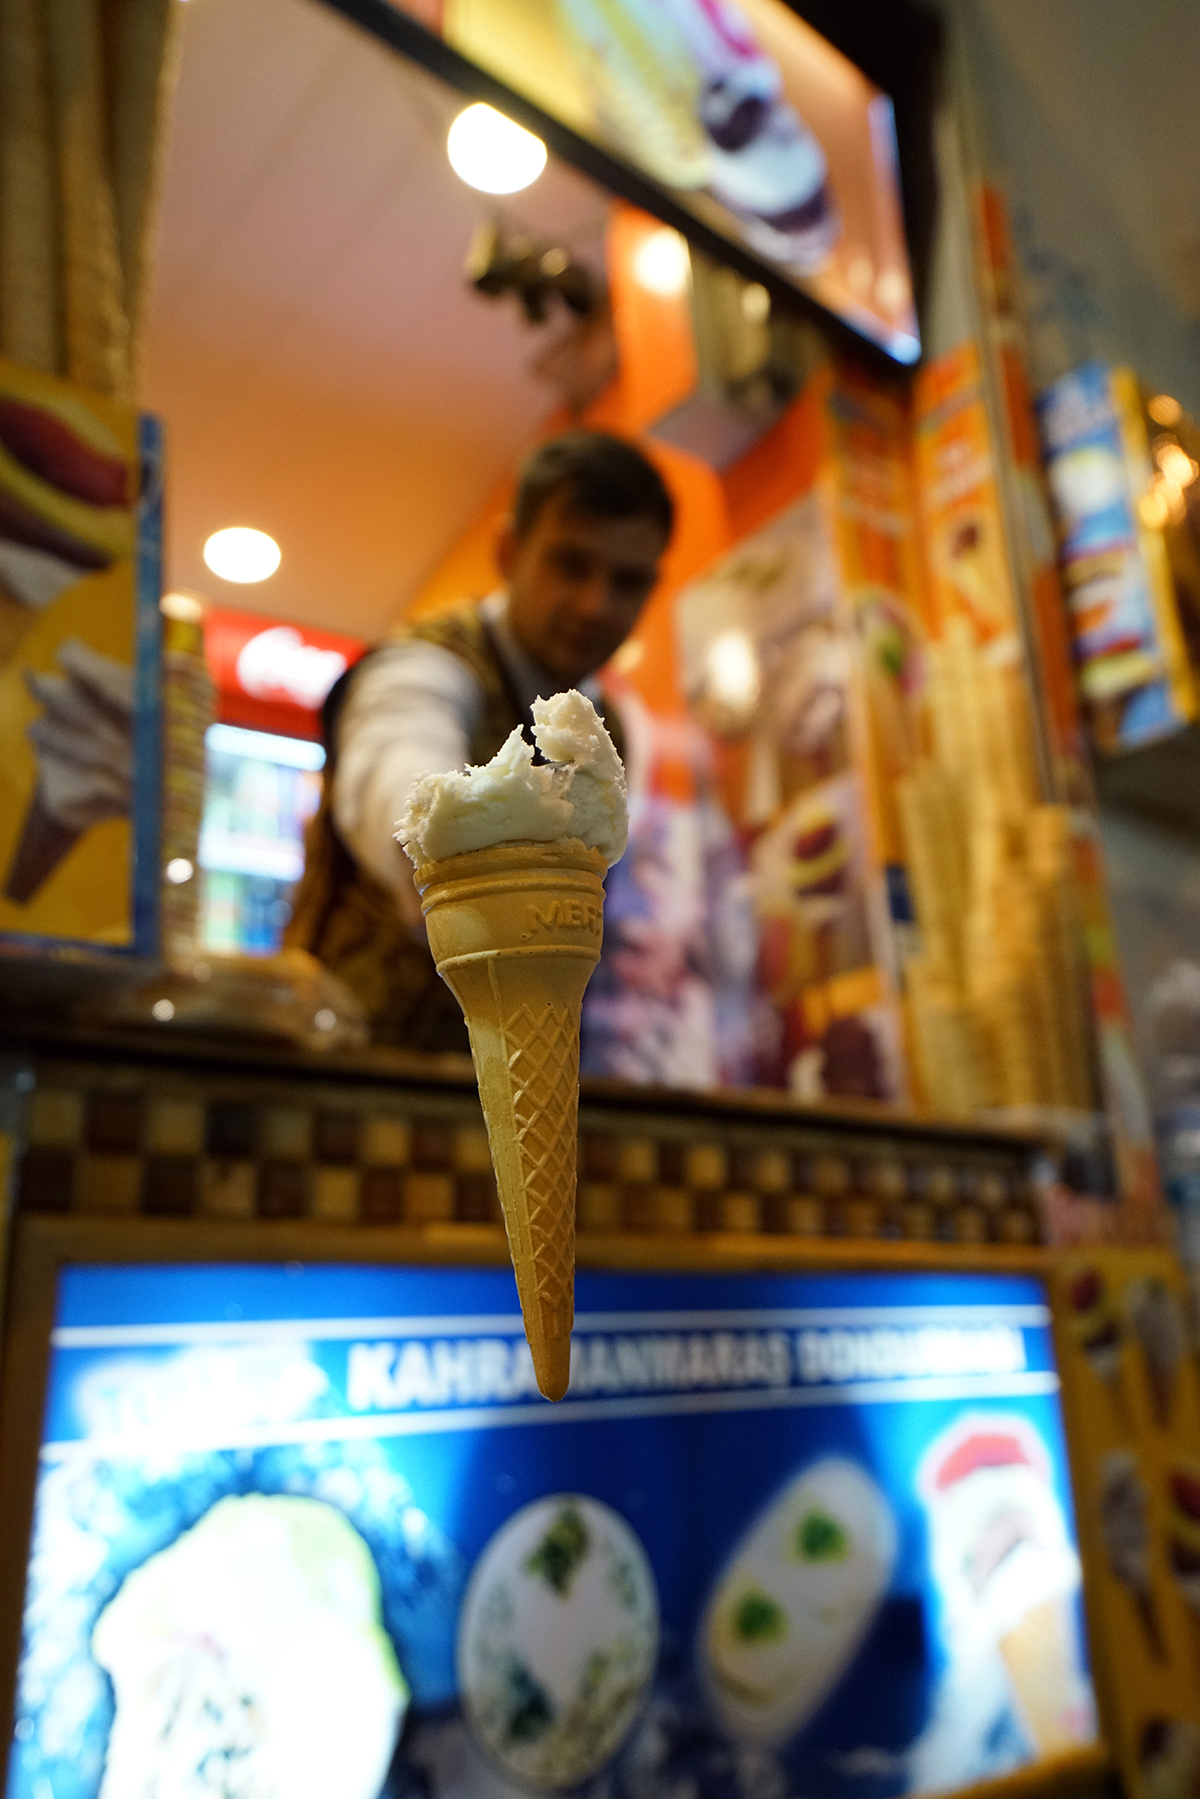 Day 343 —Beyoğlu –
Maraş-style ice cream vendor.
